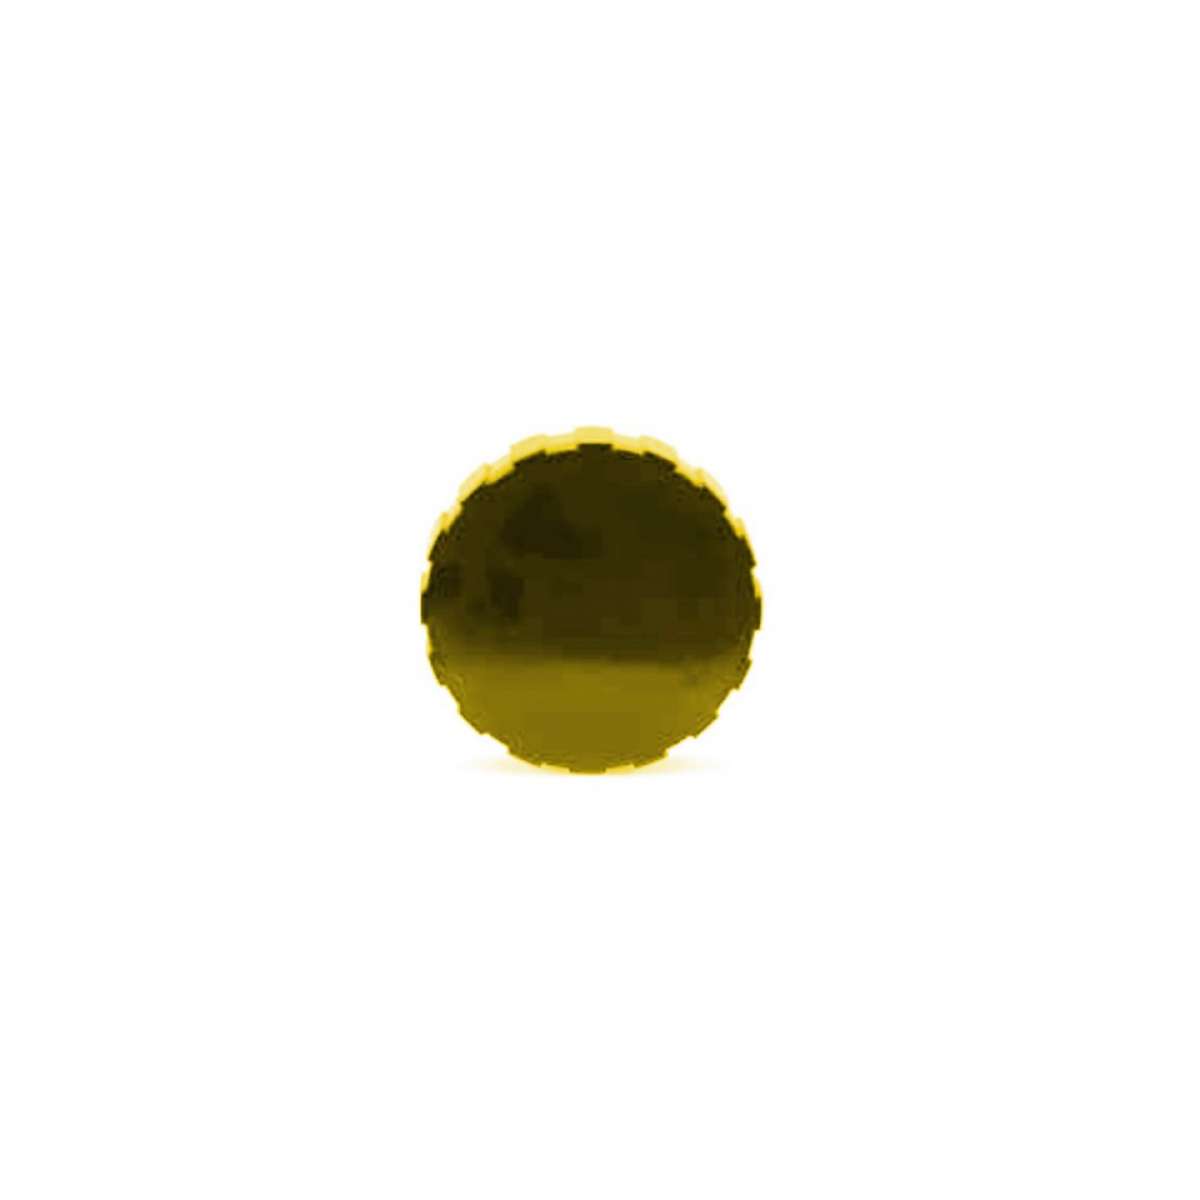 IsoLink Pump Lid Cap - Yellow